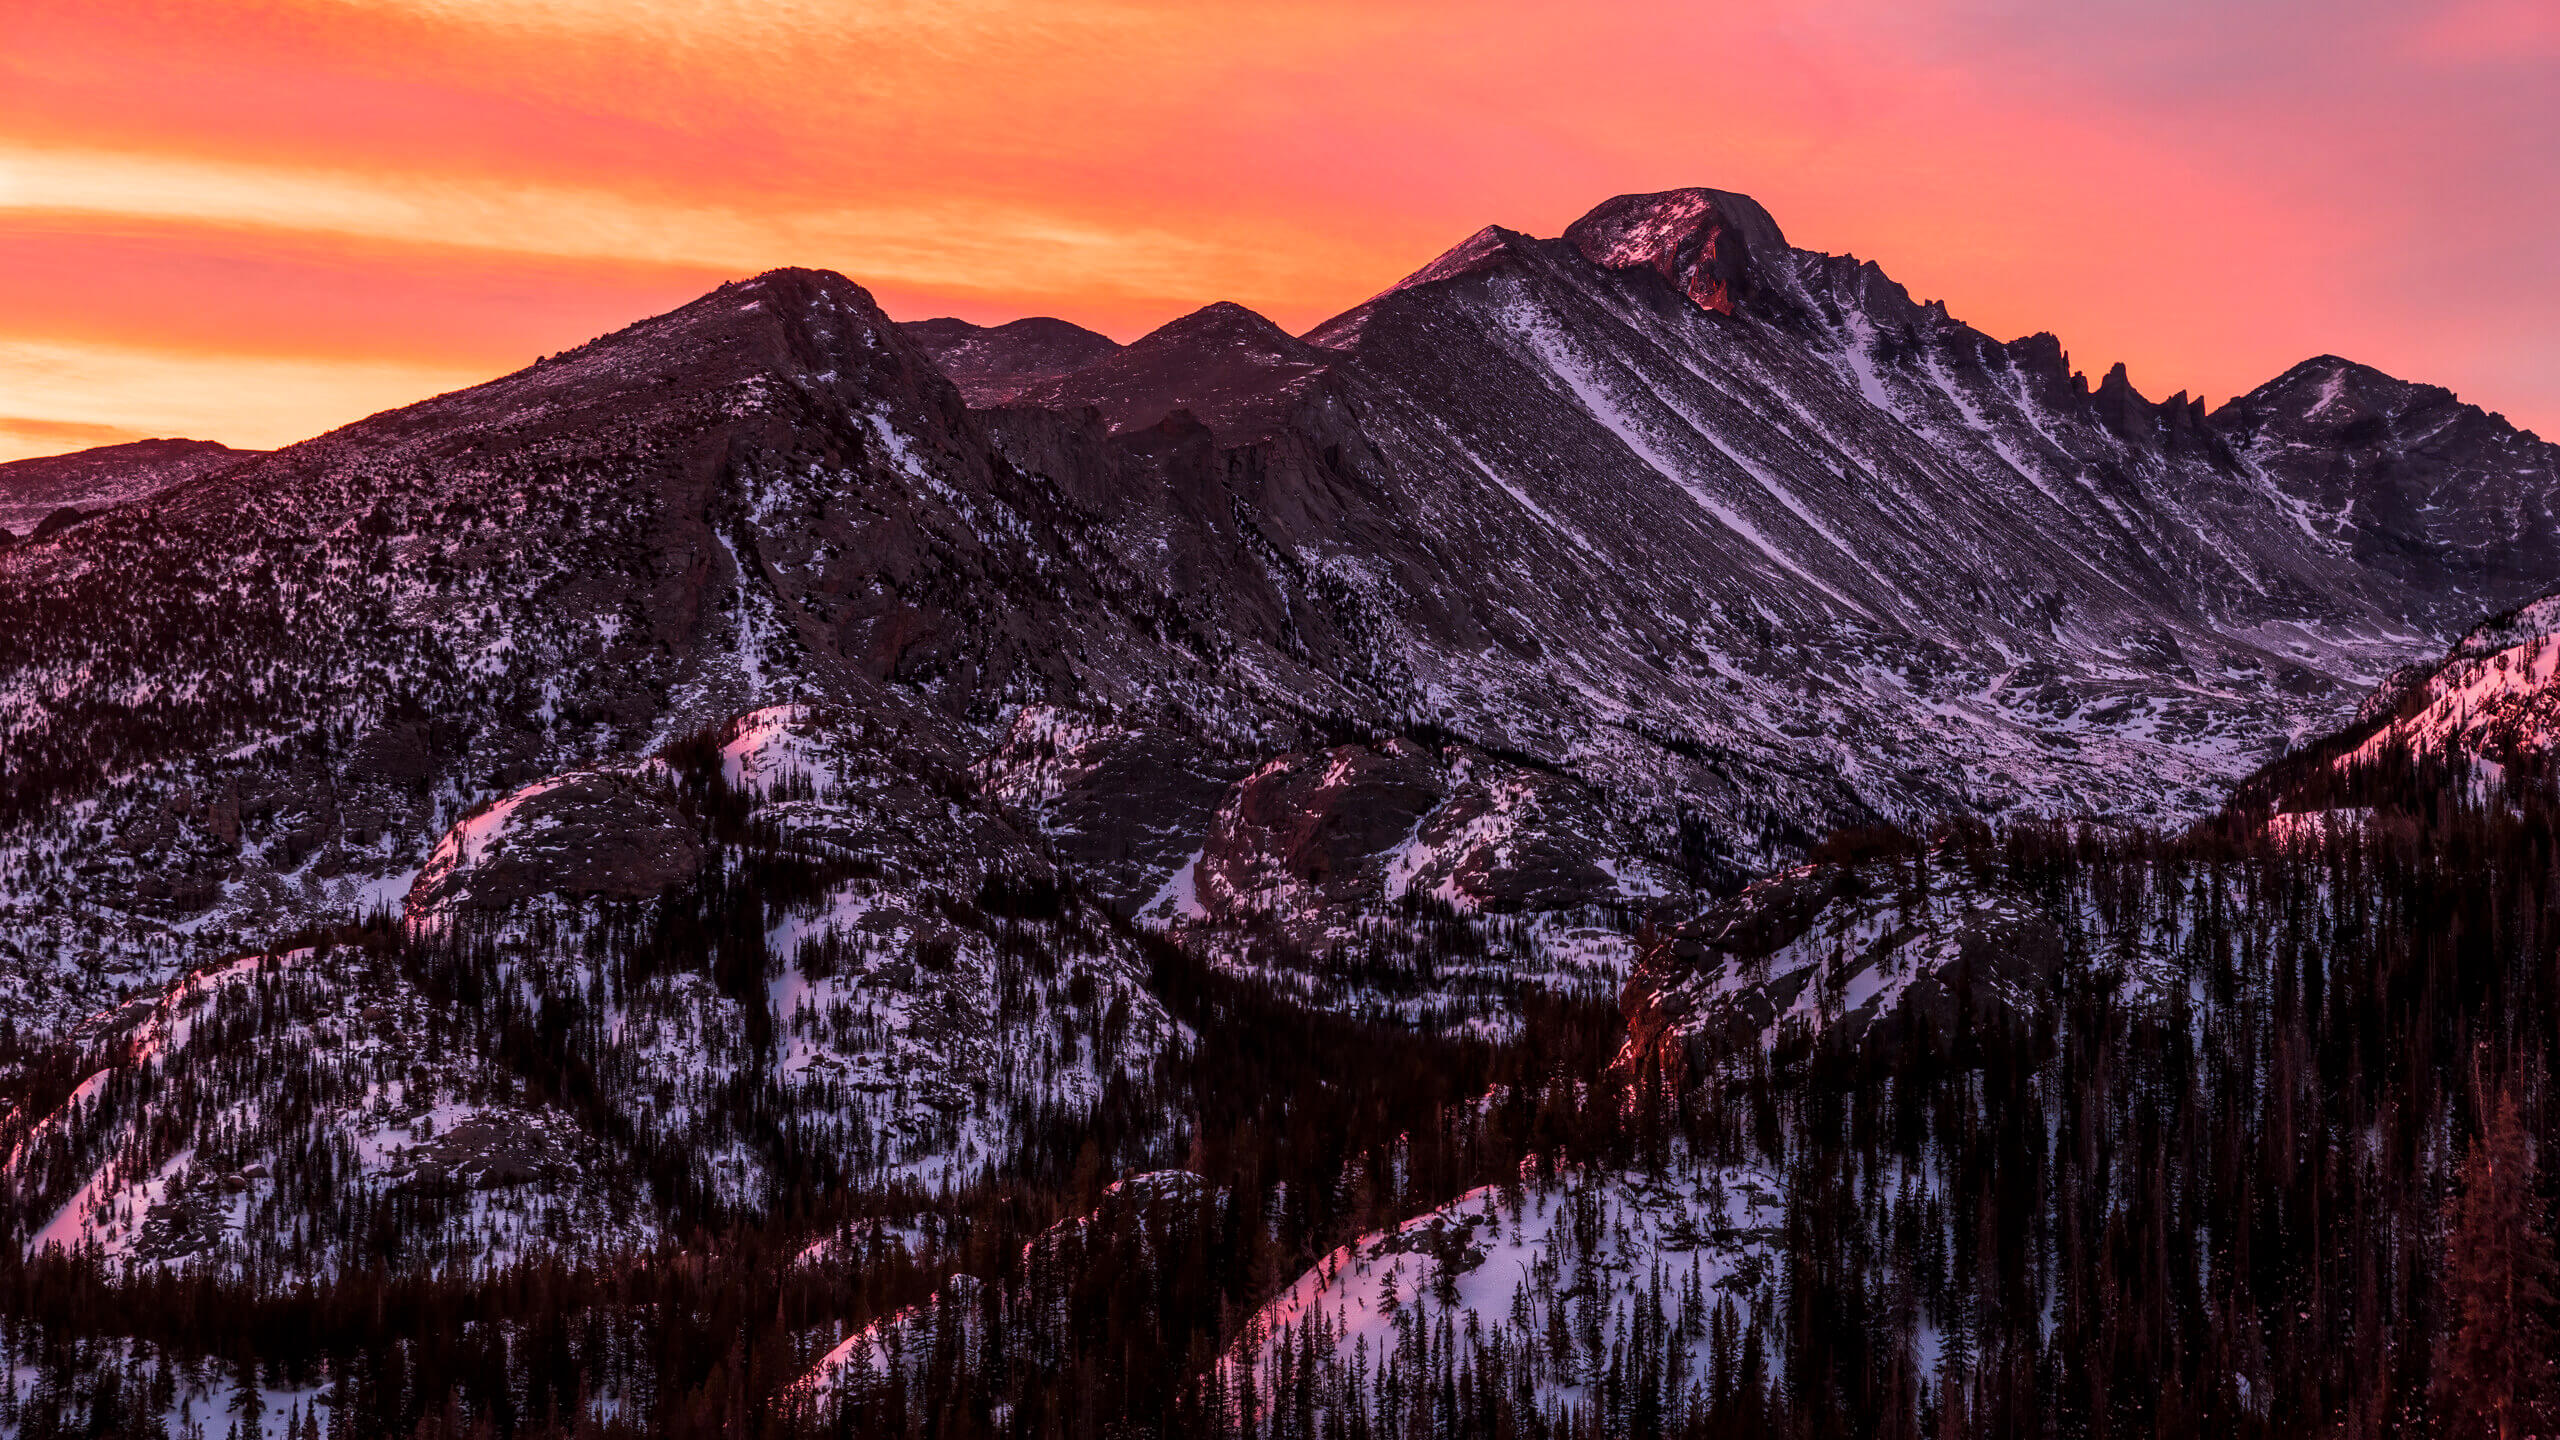 Longs Peak at Sunrise - featured image-1